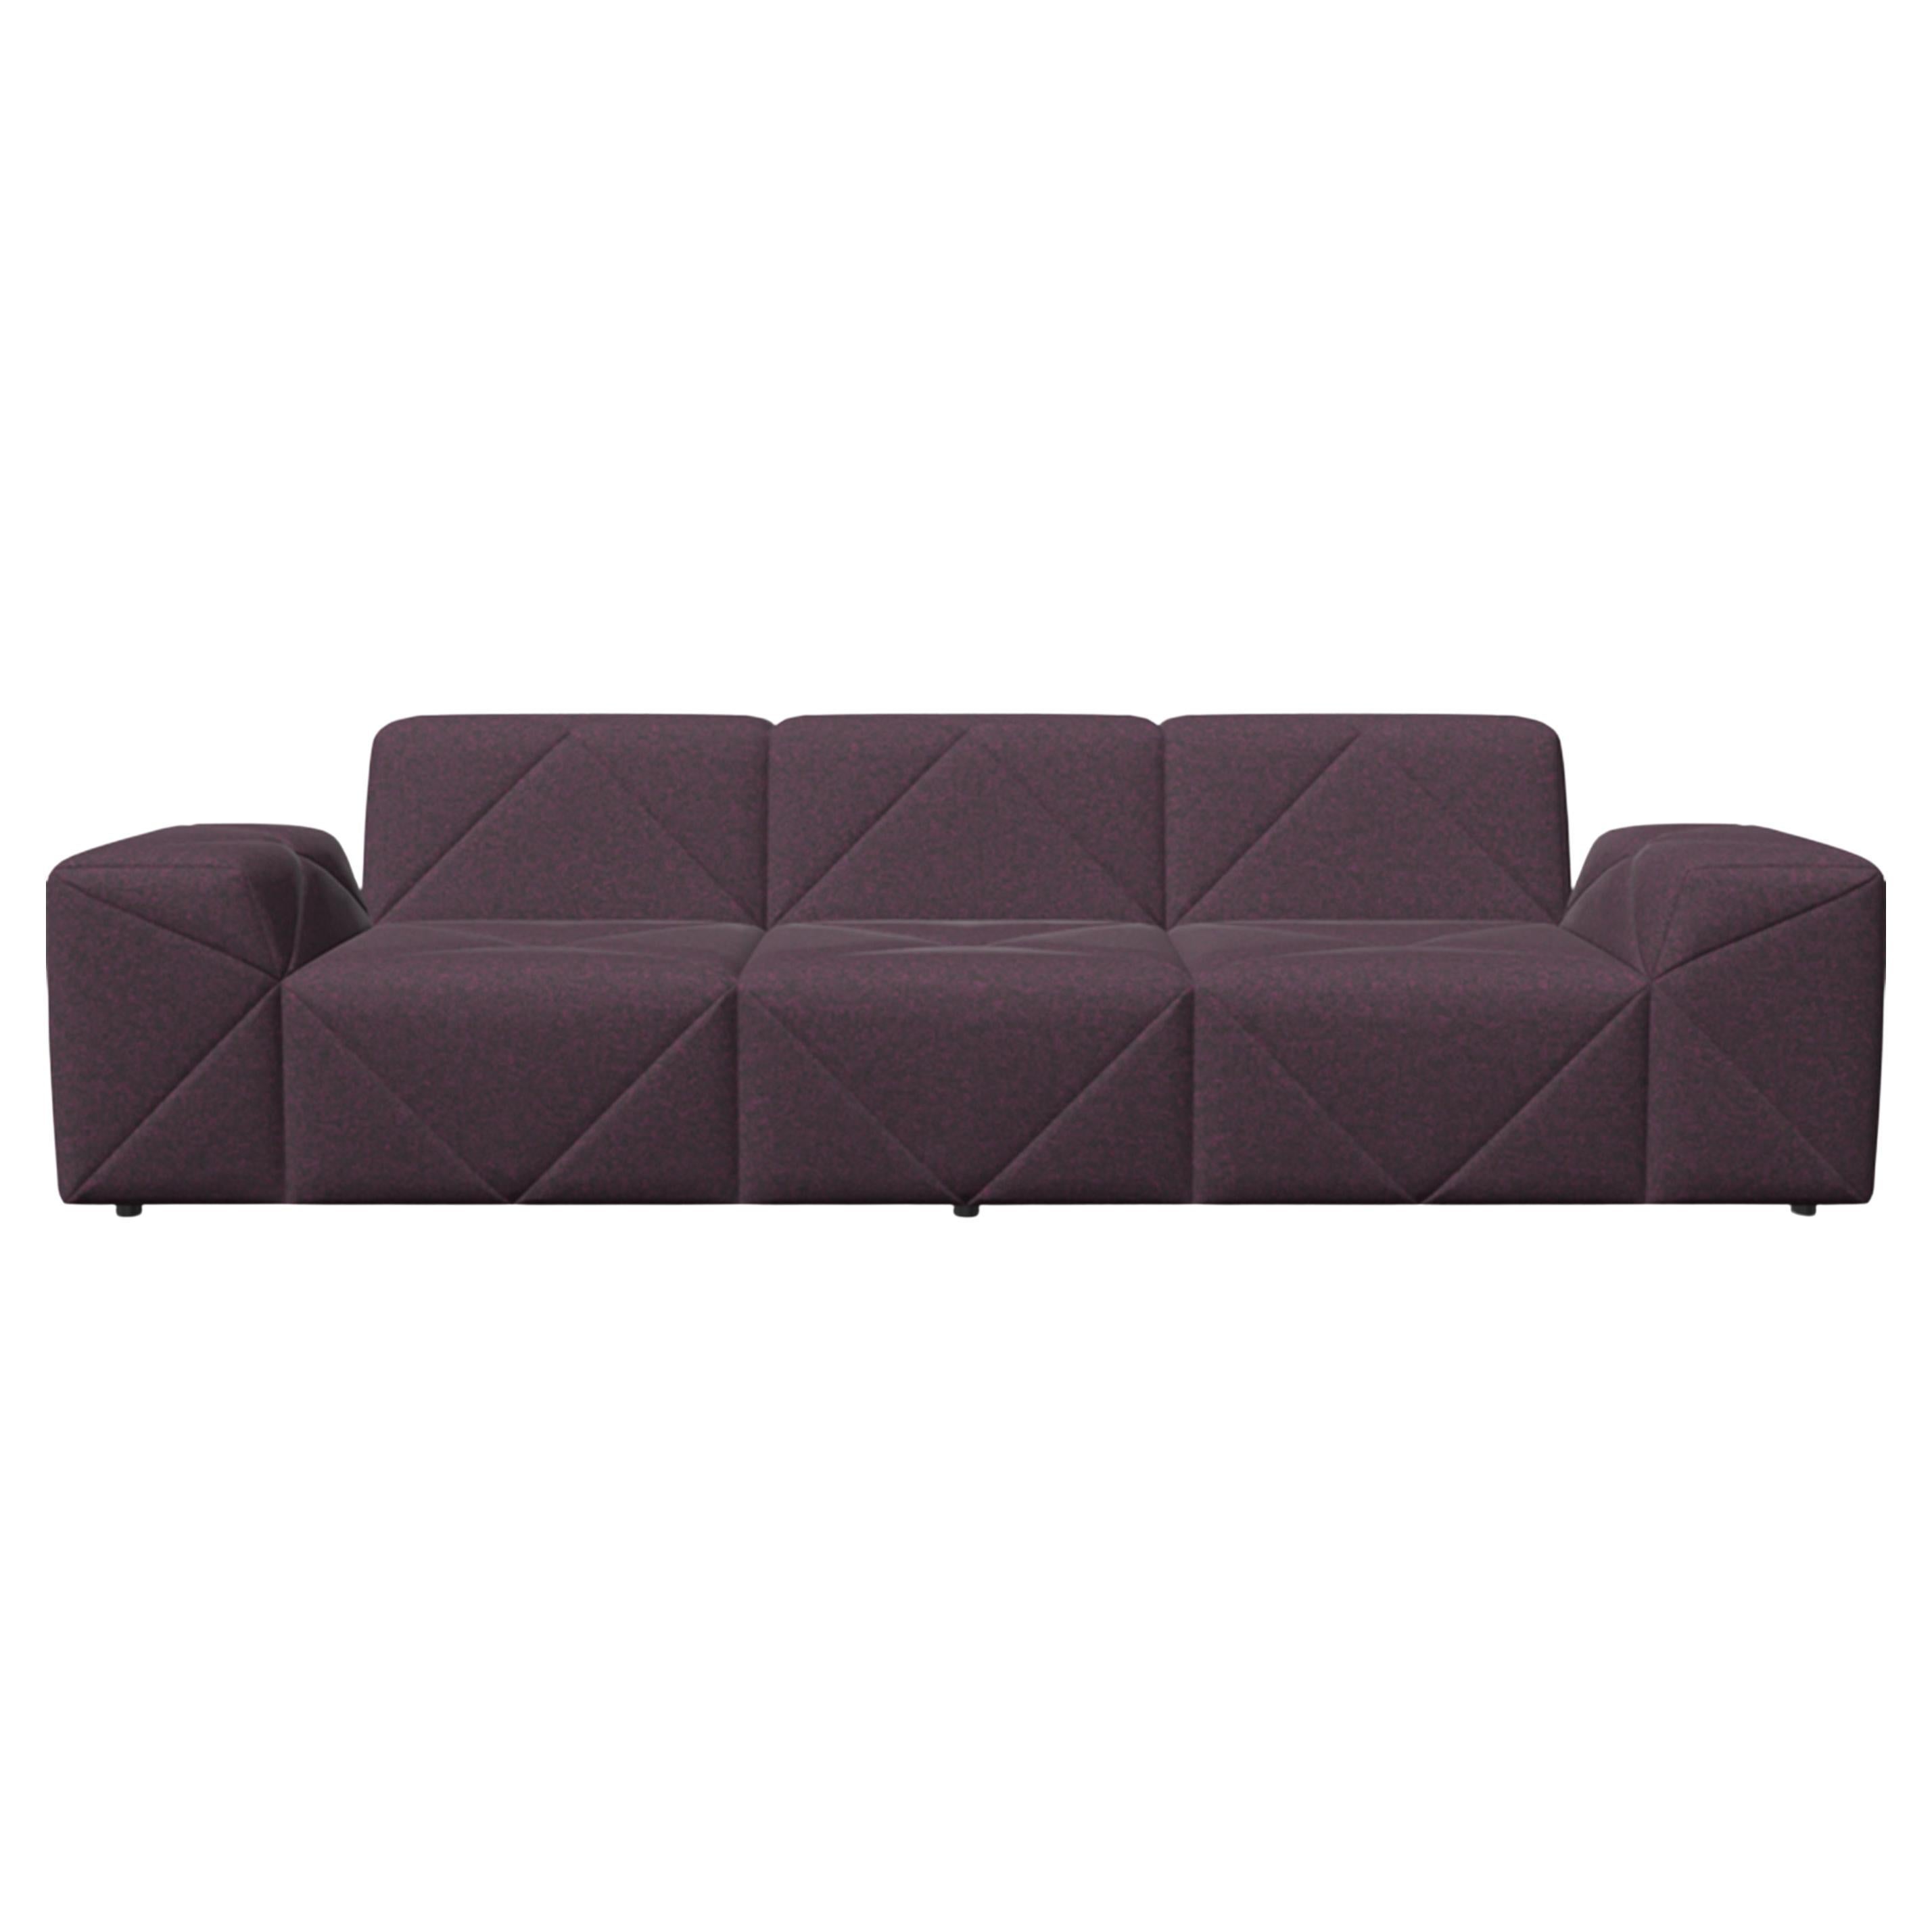 Canapé bas Triple Seater TE01 de Moooi BFF en tissu violet Divina MD, 683